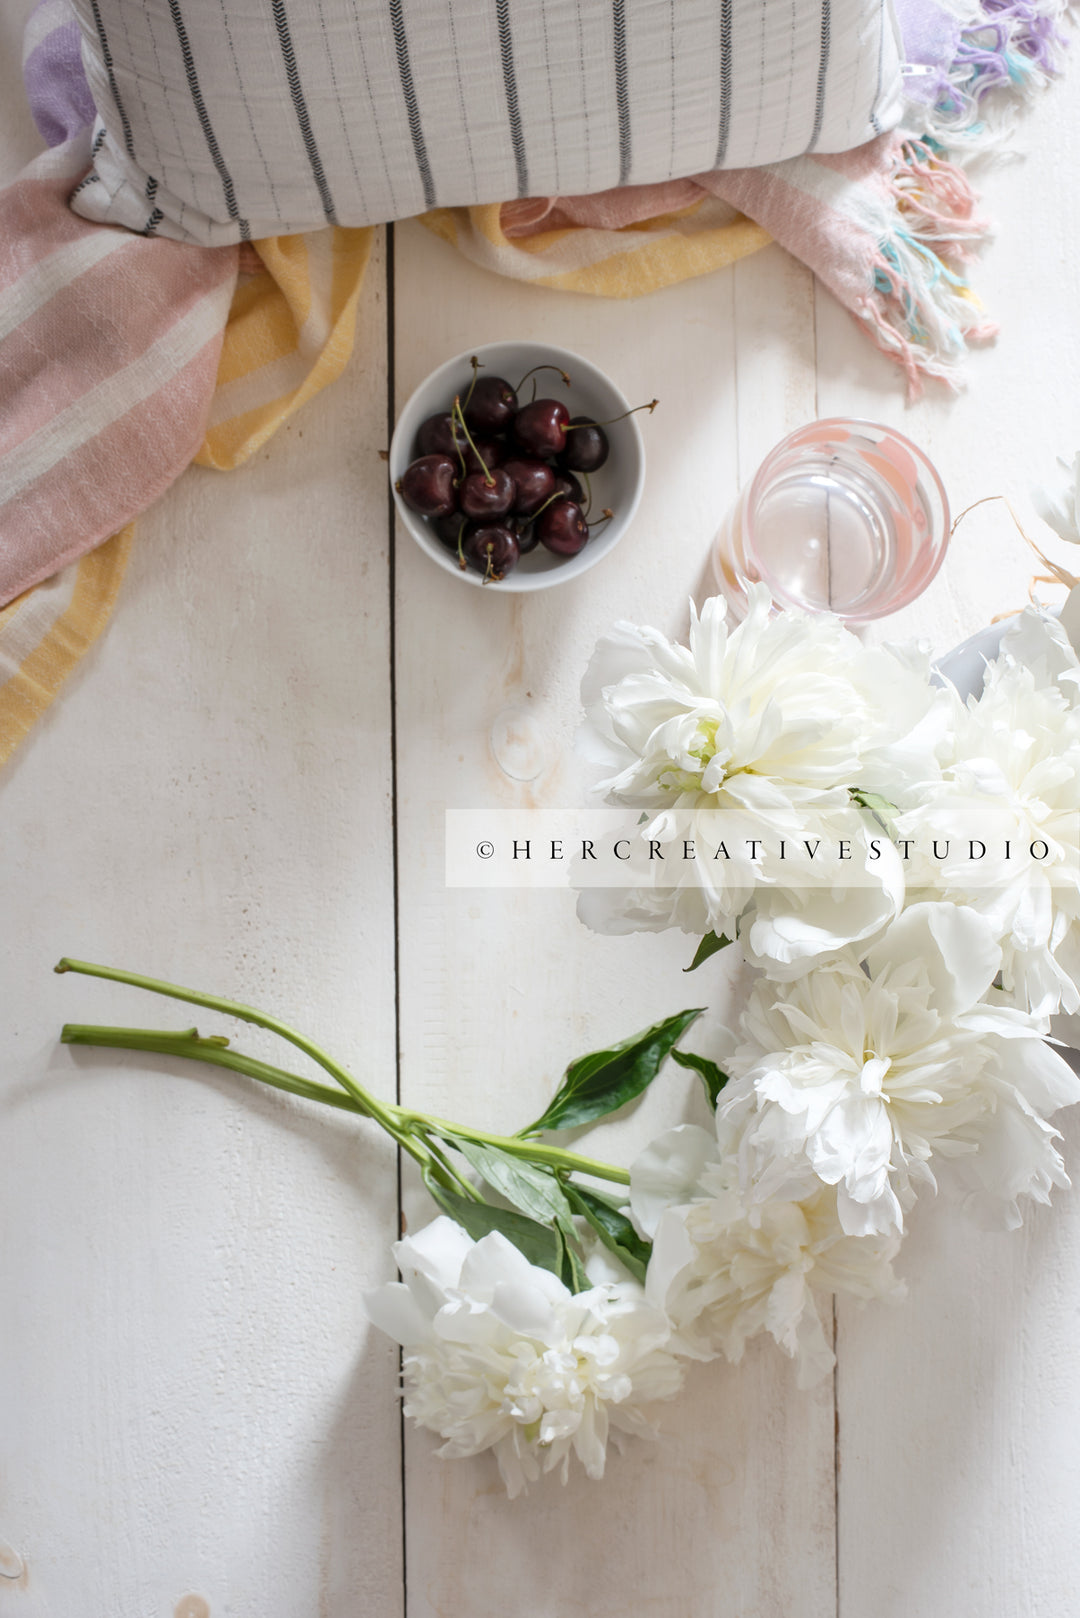 White Peonies & Cherries on Wood Background. Digital Image